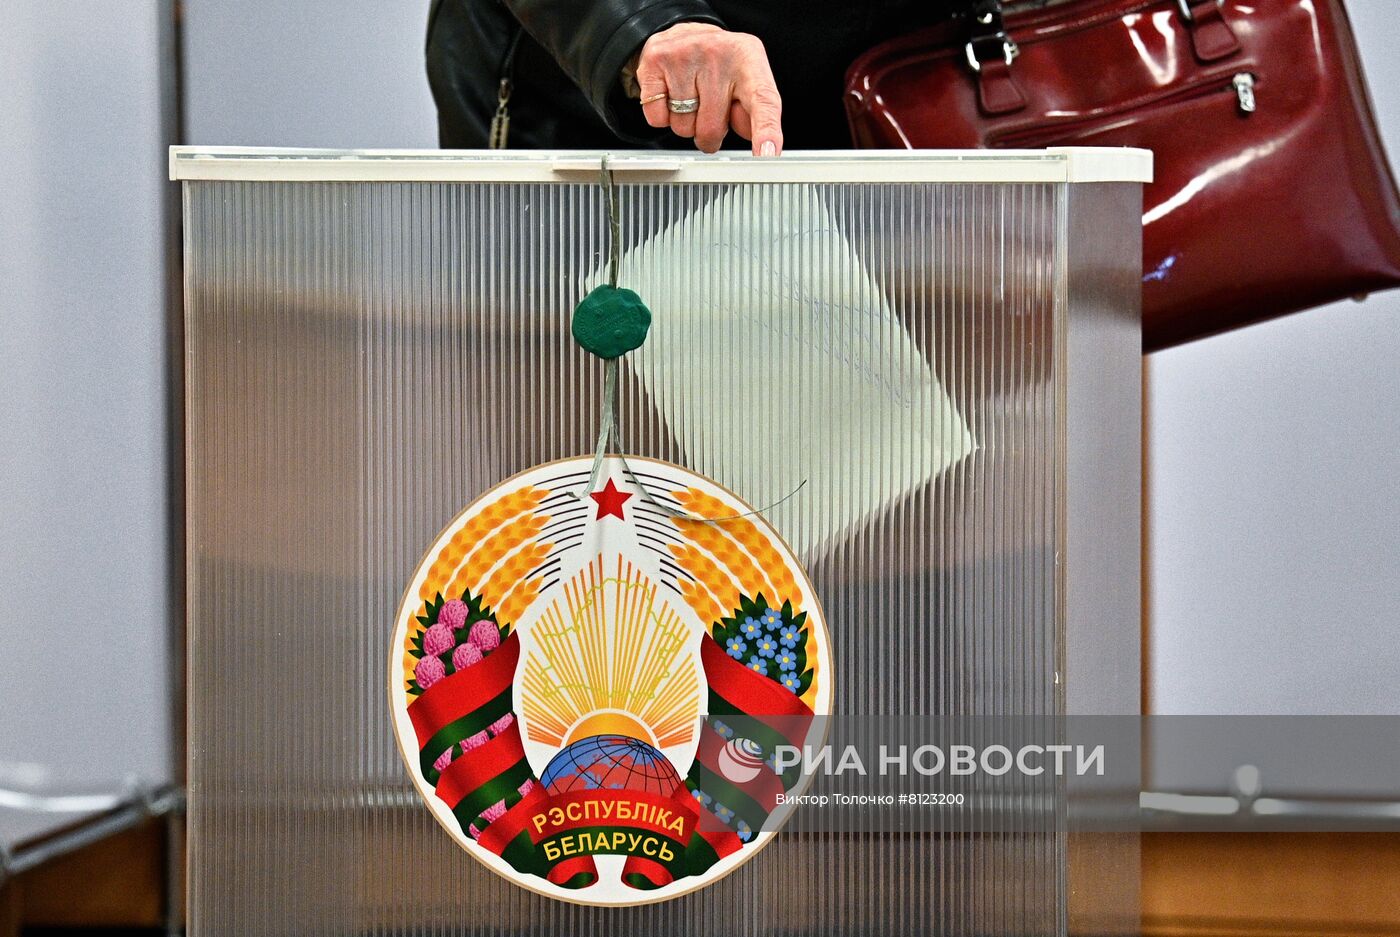 Досрочное голосование на референдуме по внесению правок в конституцию Белоруссии